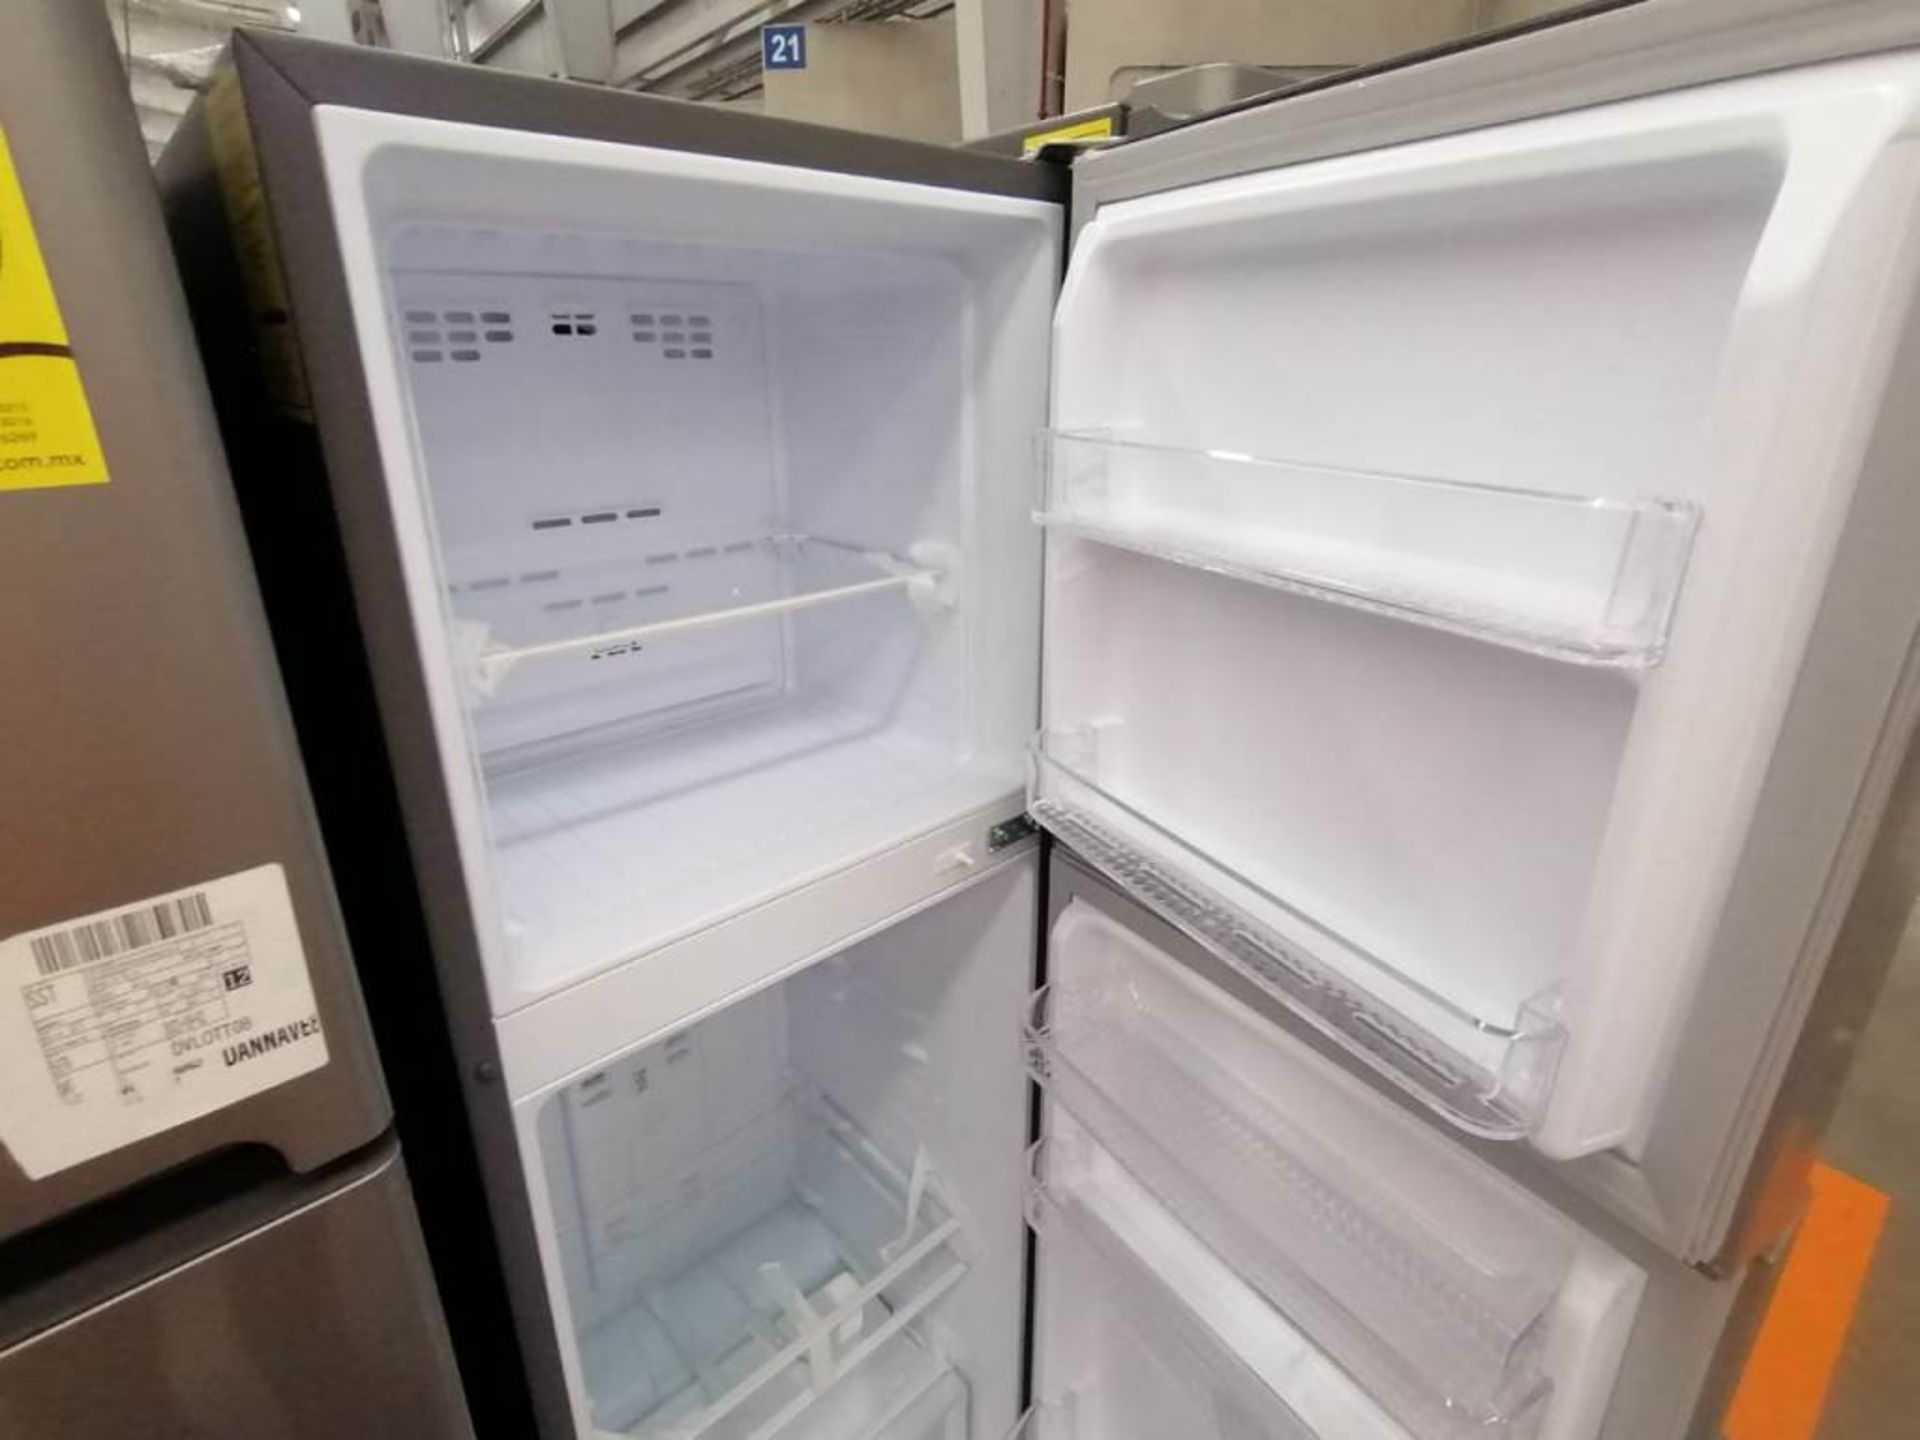 Lote de 2 Refrigeradores, Contiene 1 Refrigerador Marca Winia, Color Gris, Dos Puertas, Despachador - Image 7 of 13